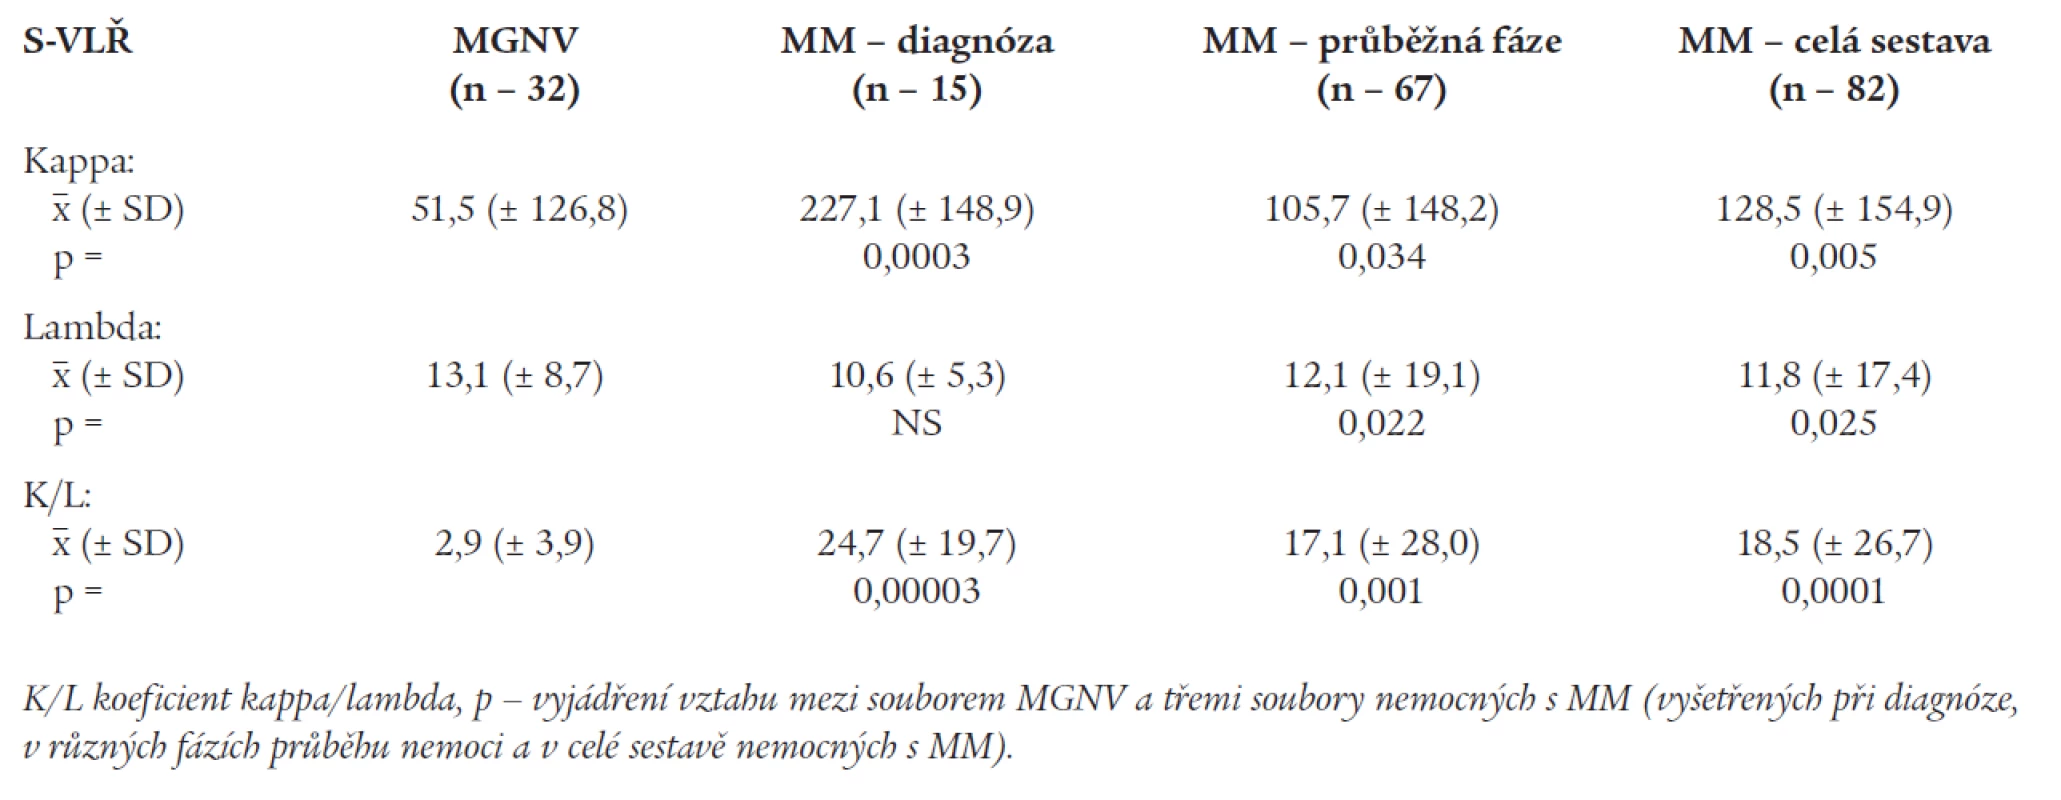 Srovnání hladin volných lehkých řetězců a jejich poměru K/L v séru nemocných s mnohočetným myelomem a monoklonální gamapatií nejistého významu v sestavě κ (Mann-Whitney U test, p &lt; 0.05).